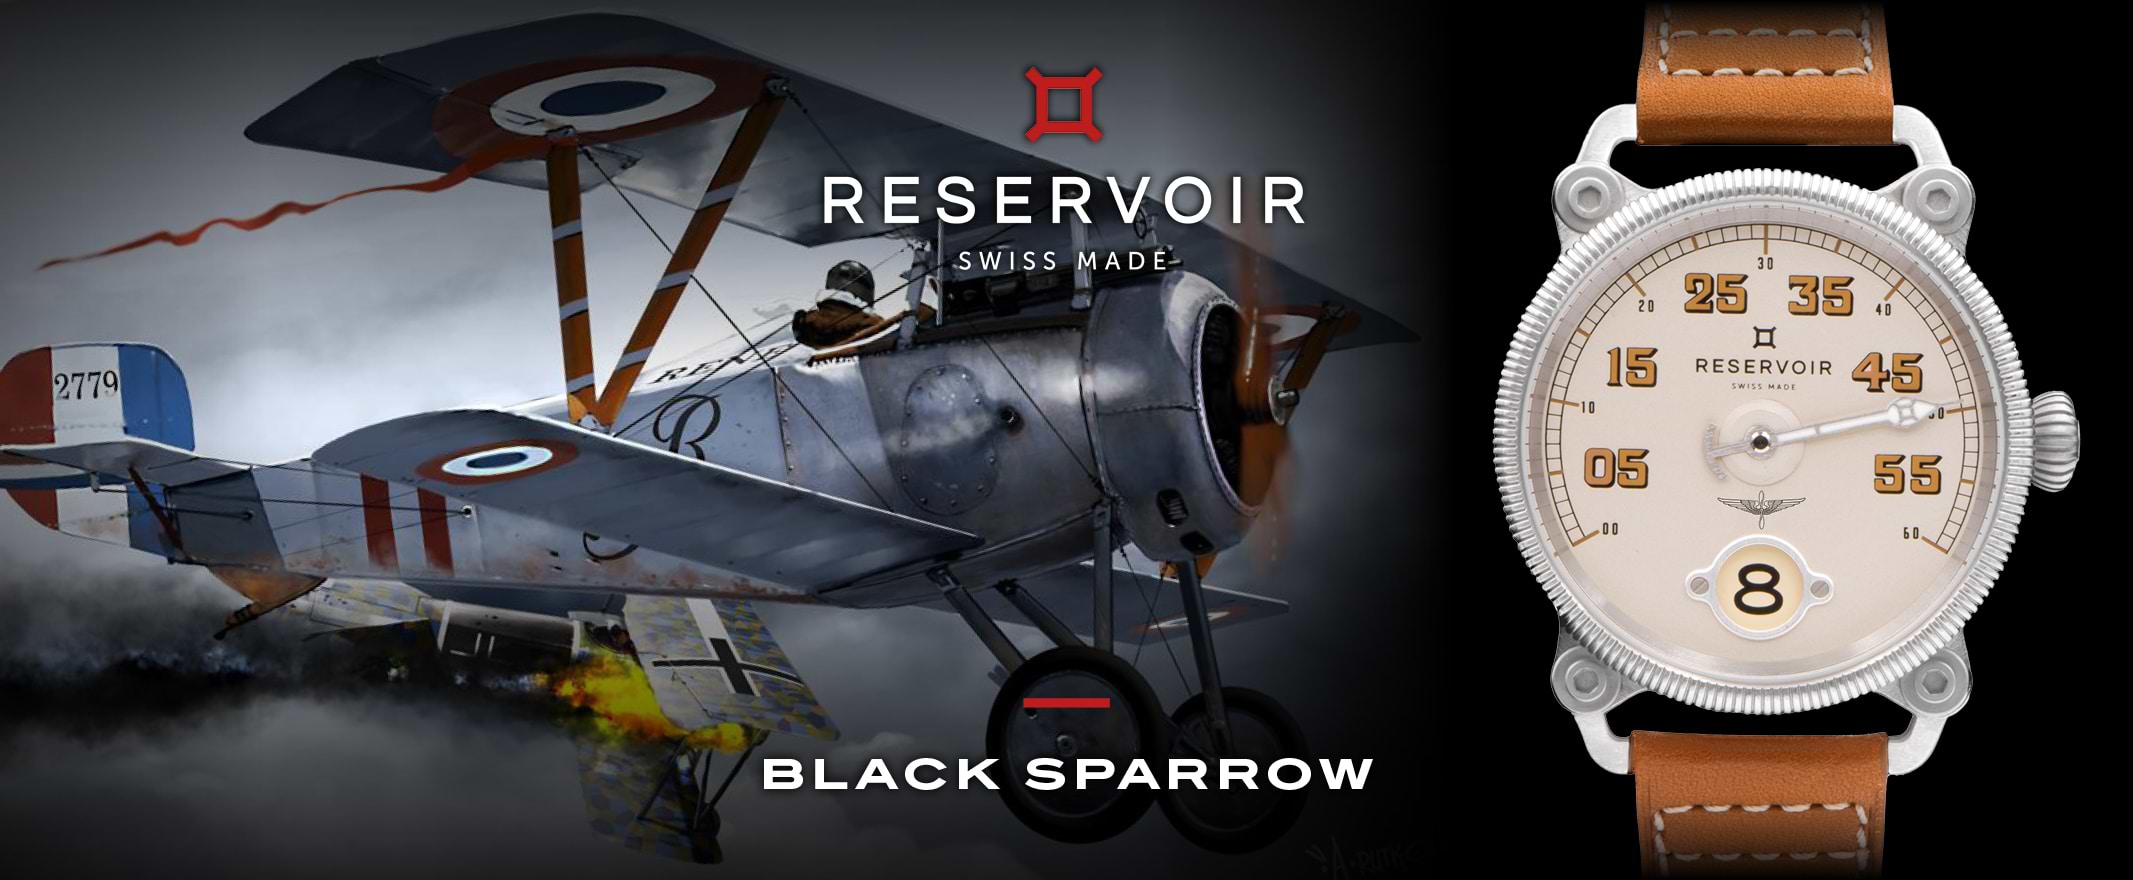 ダークブラックとミディアムグレイッシュブルーの空を背景に、ライトグレイッシュベージュの腕時計を持つ、革ジャンを着て複葉機を操縦するWW1パイロット。